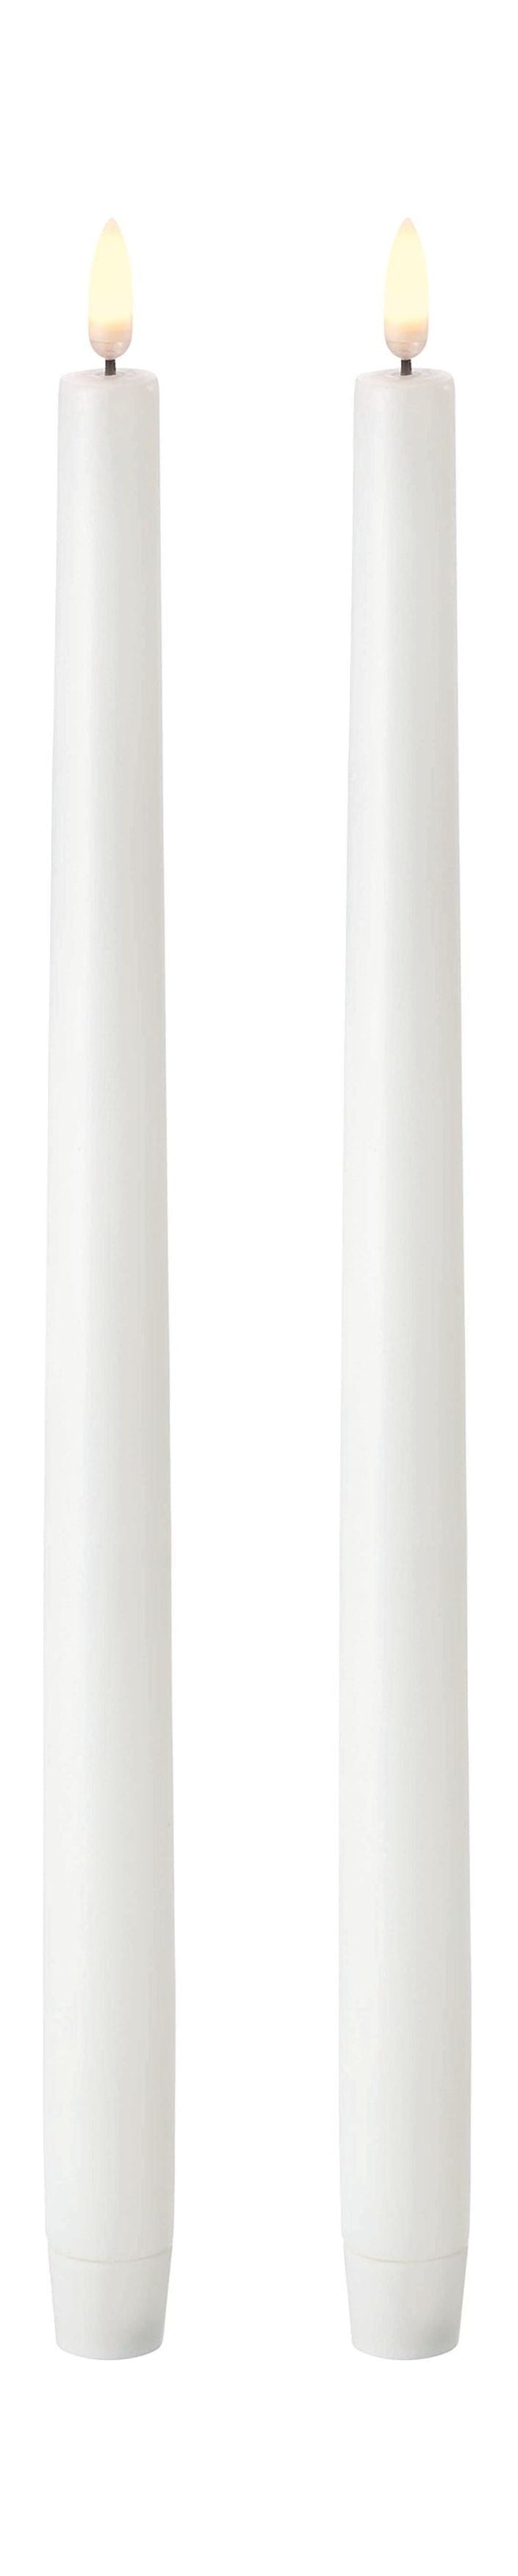 Cougie de bâton LED d'éclairage Uyuni 3 D 2 PCS. Øx H 2,3x35 cm, blanc nordique